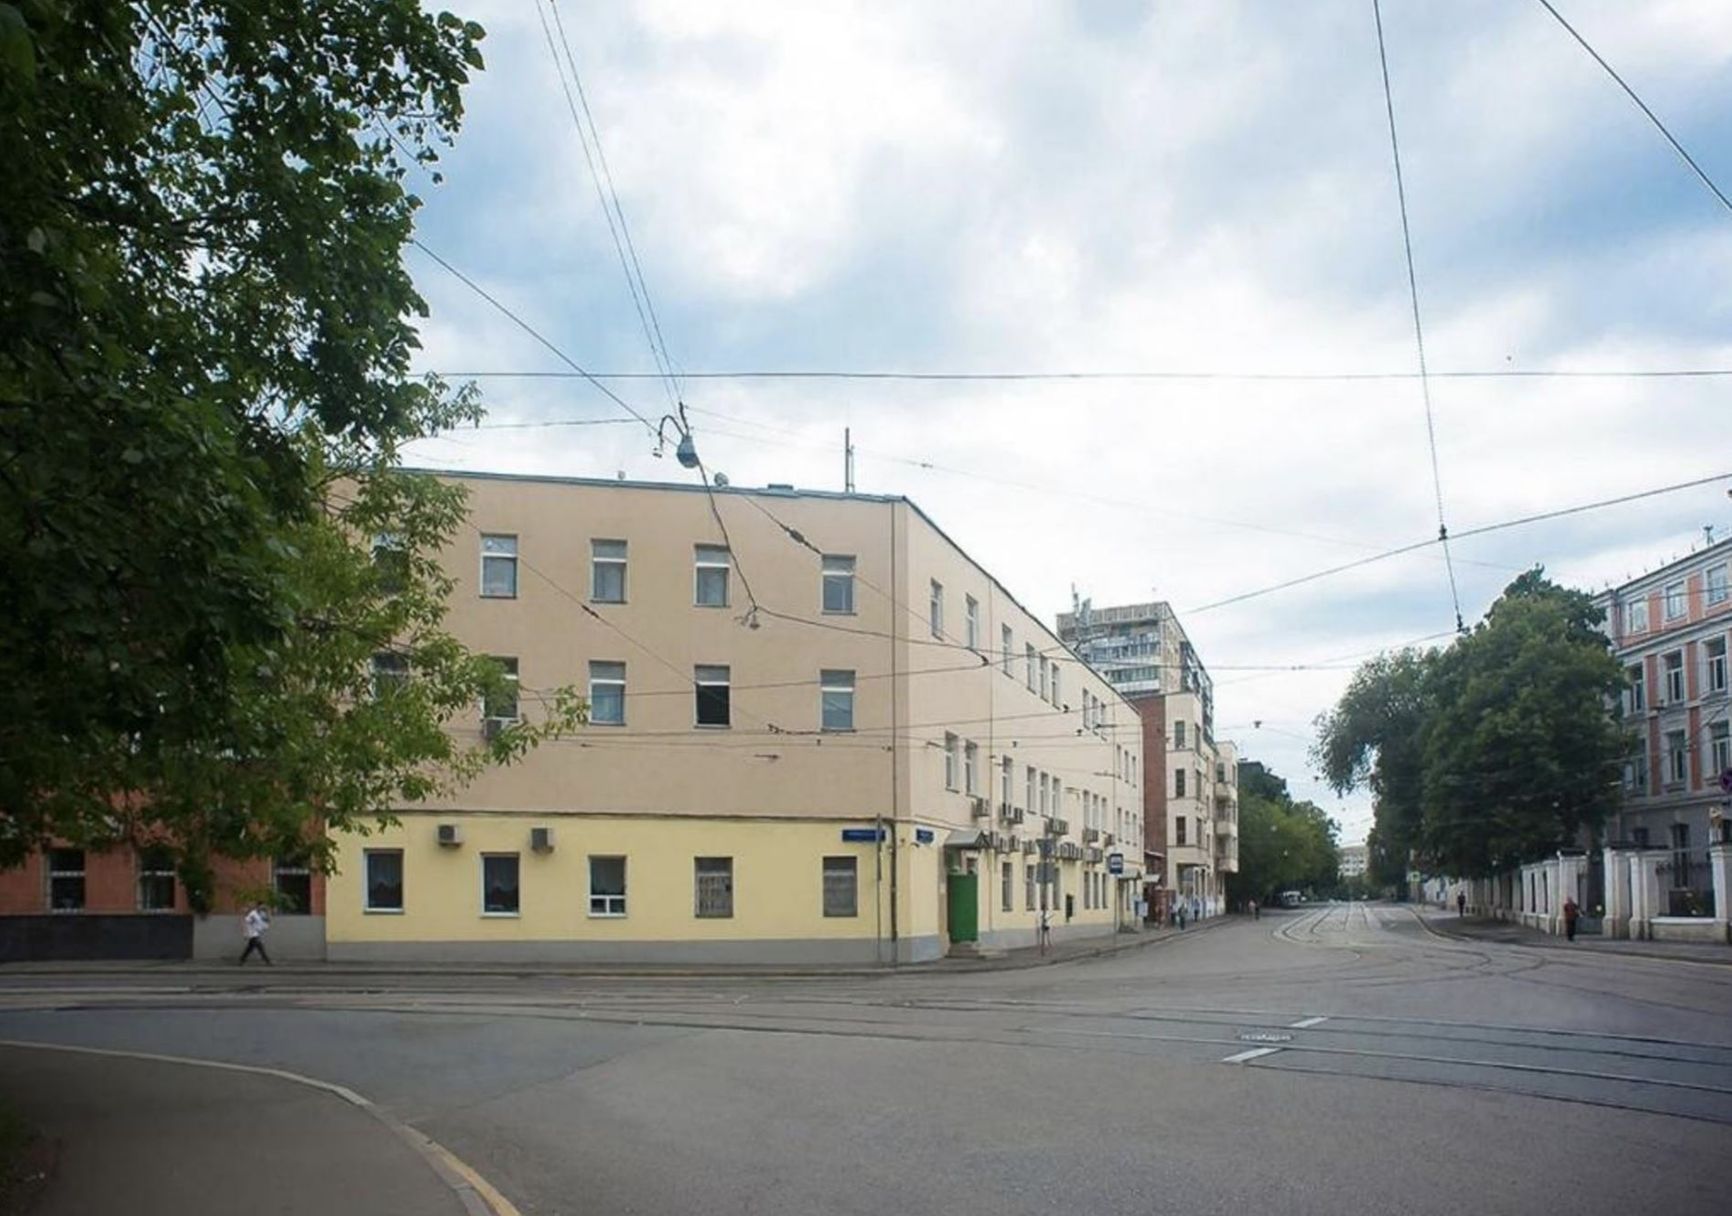 Travel Inn hostel on Mendeleevskaya, which the police raided for mobilization